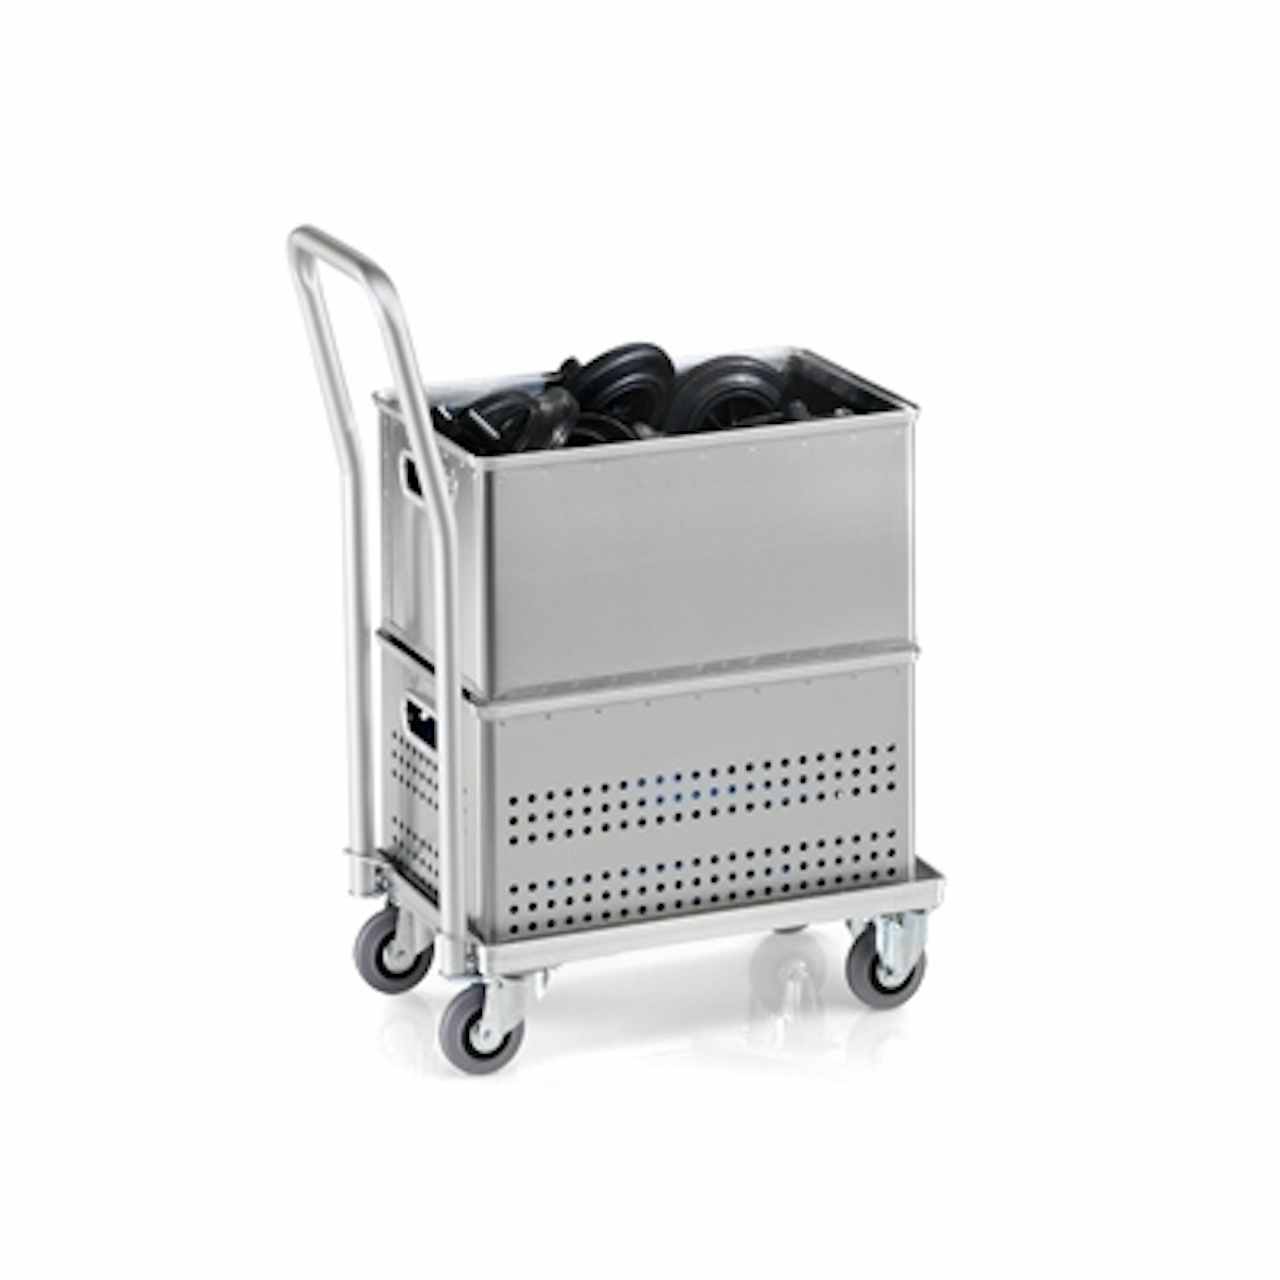 Premium Storage Case Trolley